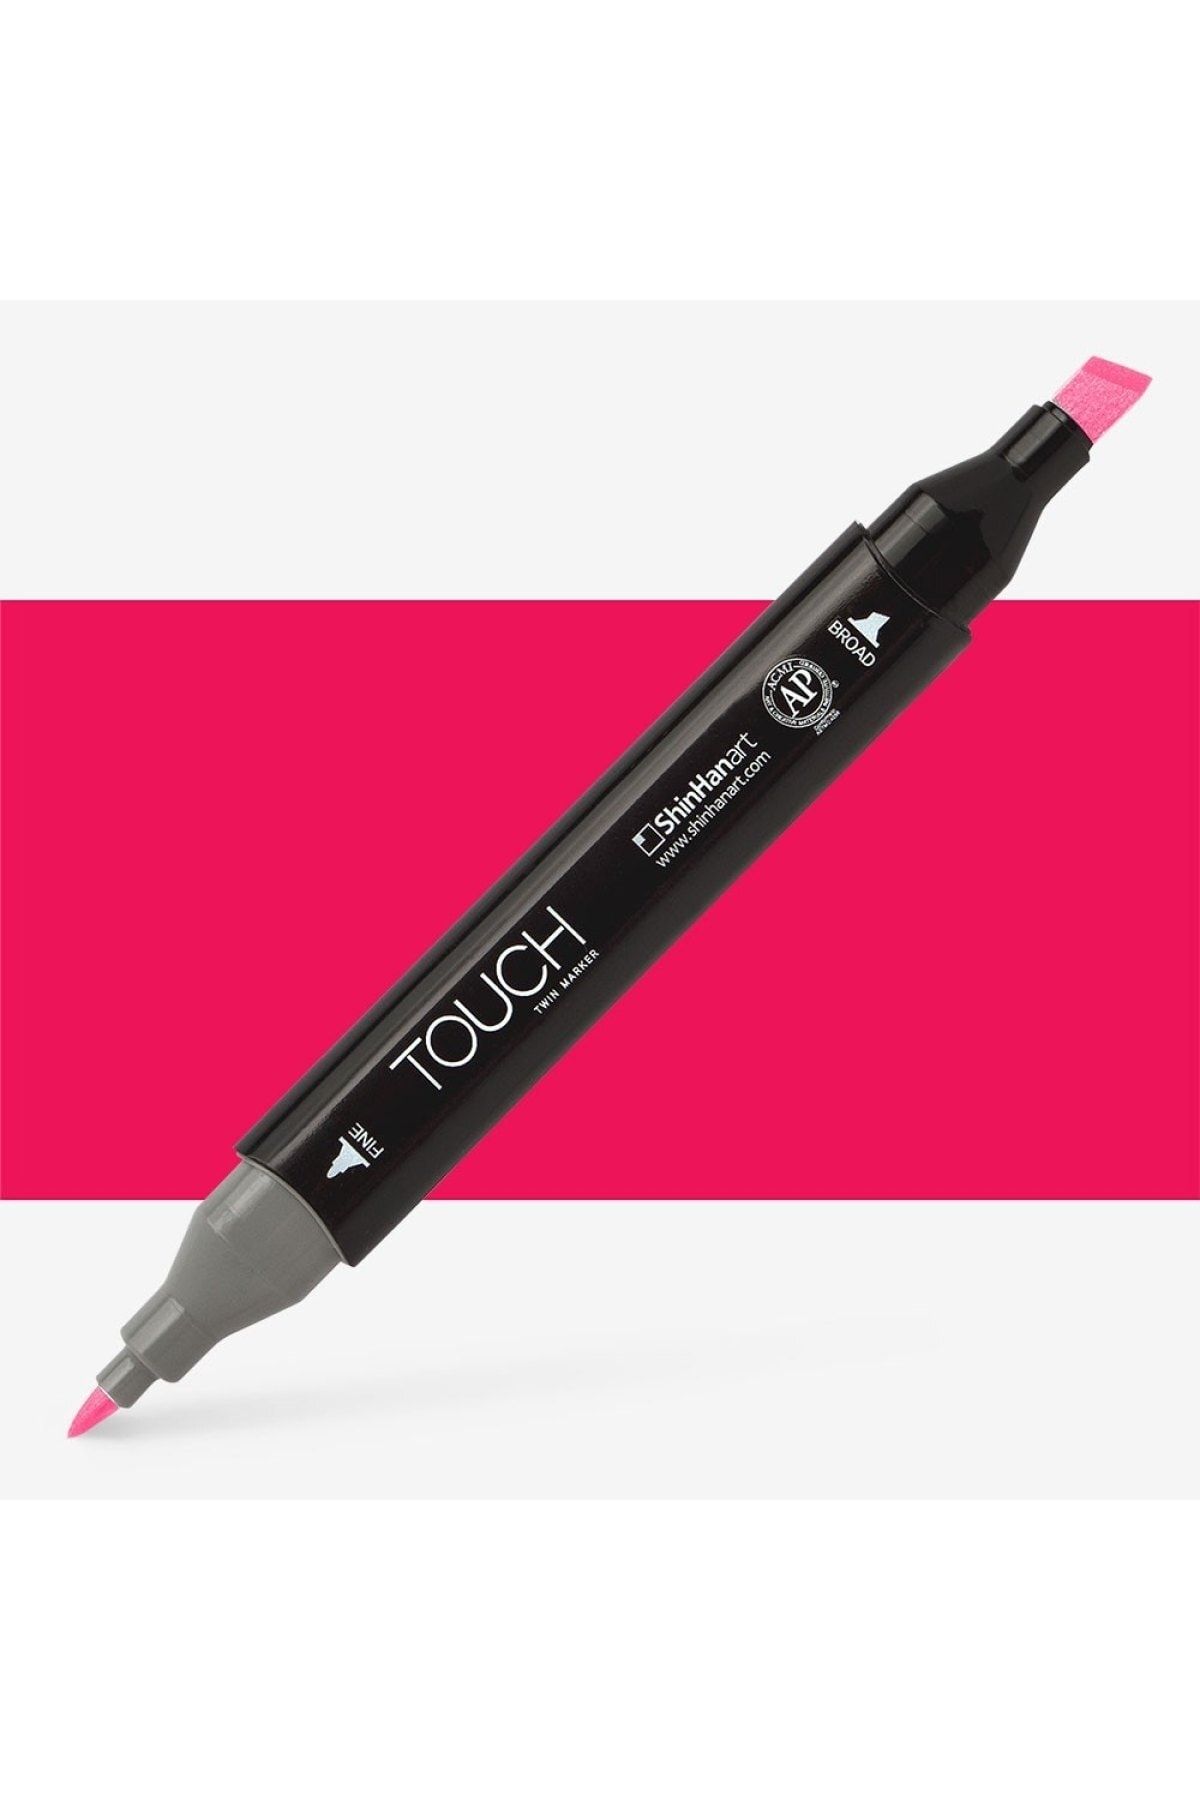 Shinhan Art Touch Twin Marker Pen : Çift Uçlu Marker Kalemi : Deep Red : R10